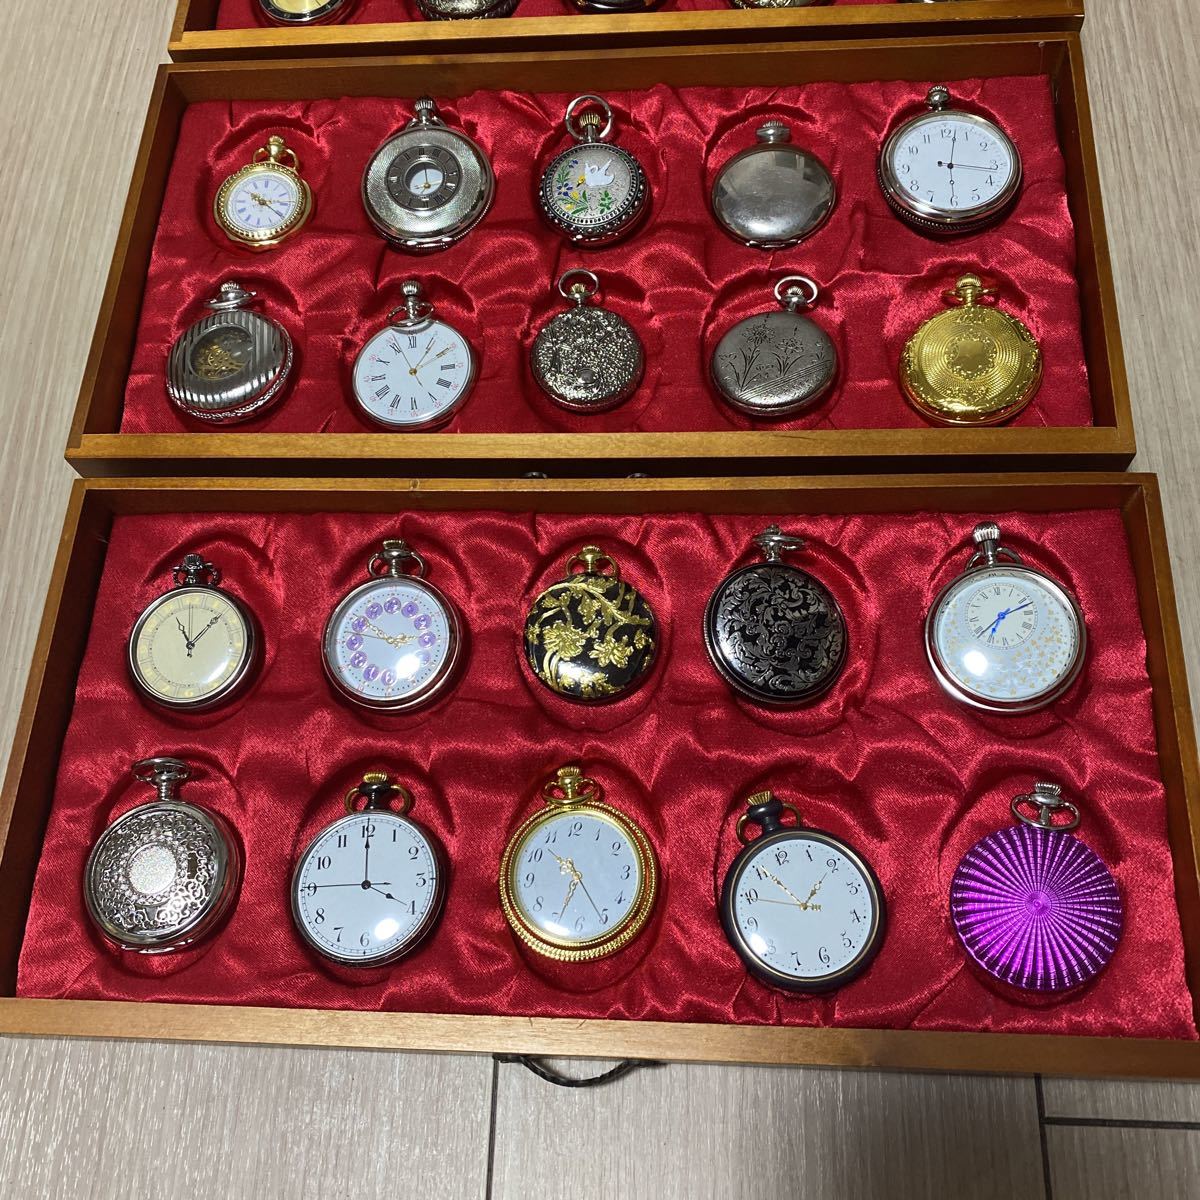 行董】 DeAGOSTINI デアゴスティー二 蘇る古の時計 シリーズ 懐中時計